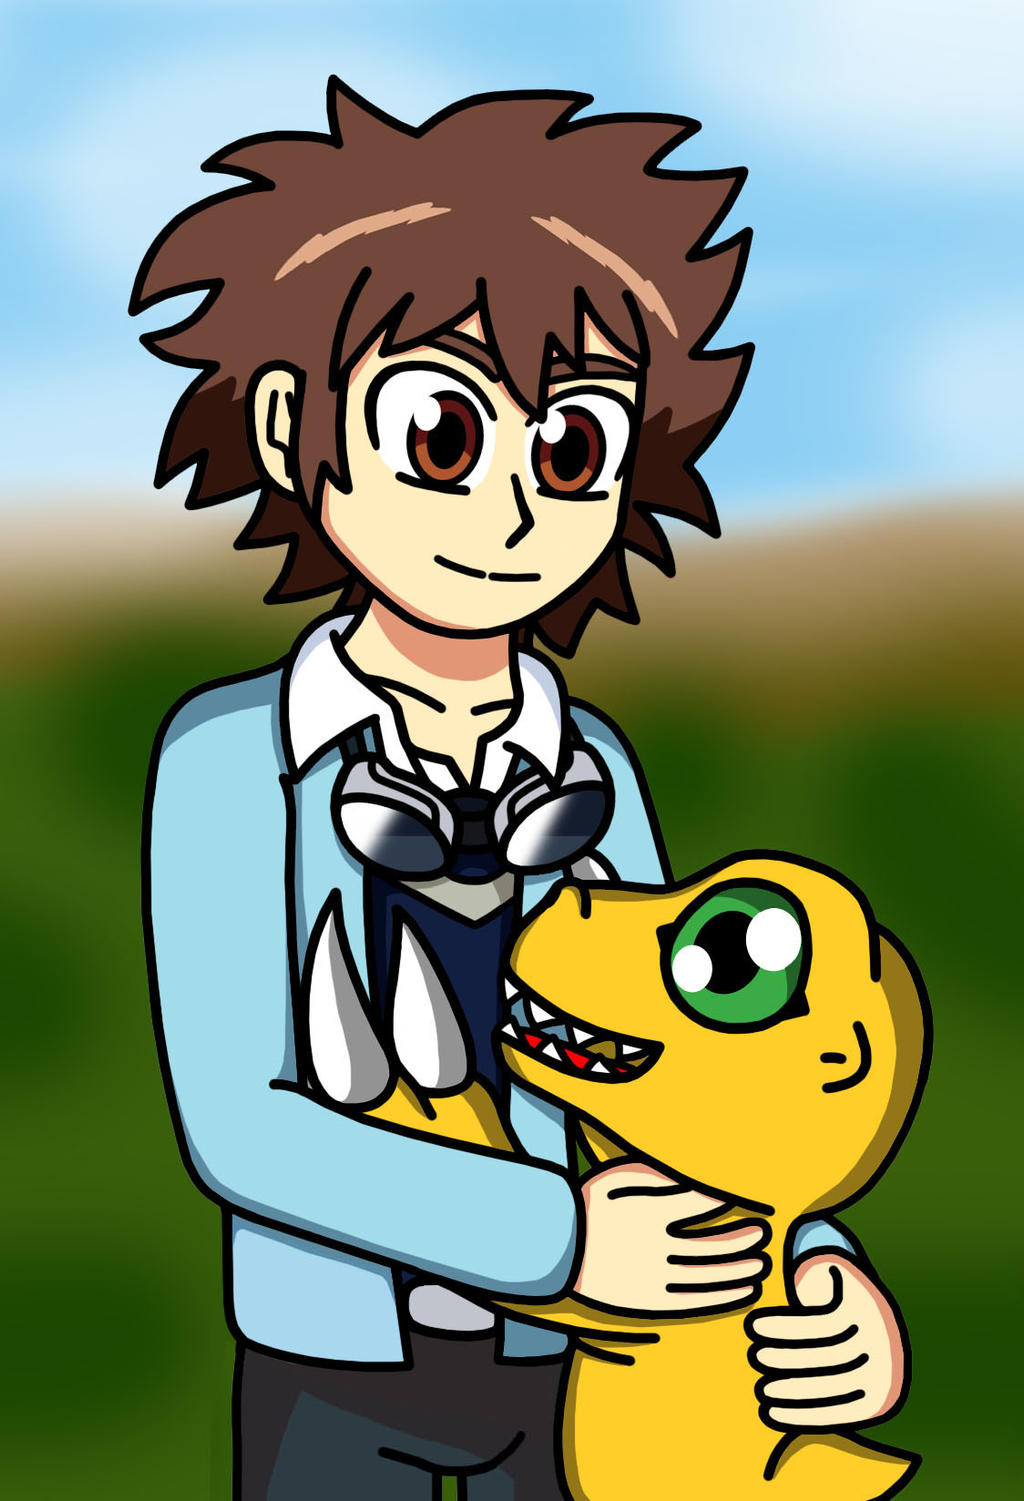 Tai and Agumon - Digimon Tri by RenatoDesenhista on DeviantArt